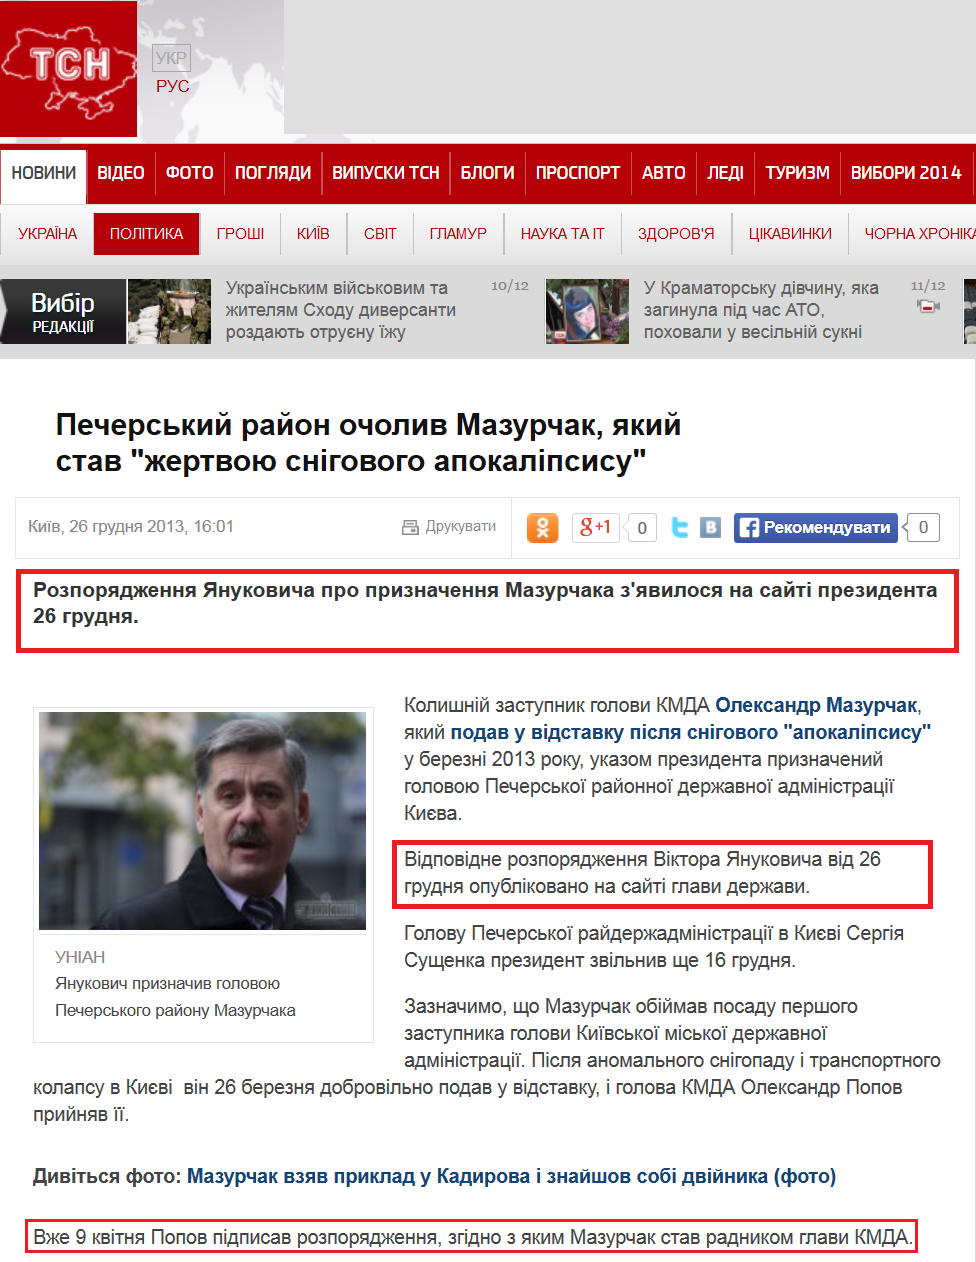 http://tsn.ua/politika/pecherskiy-rayon-ocholiv-mazurchak-yakiy-stav-zhertvoyu-snigovogo-apokalipsisu-327453.html